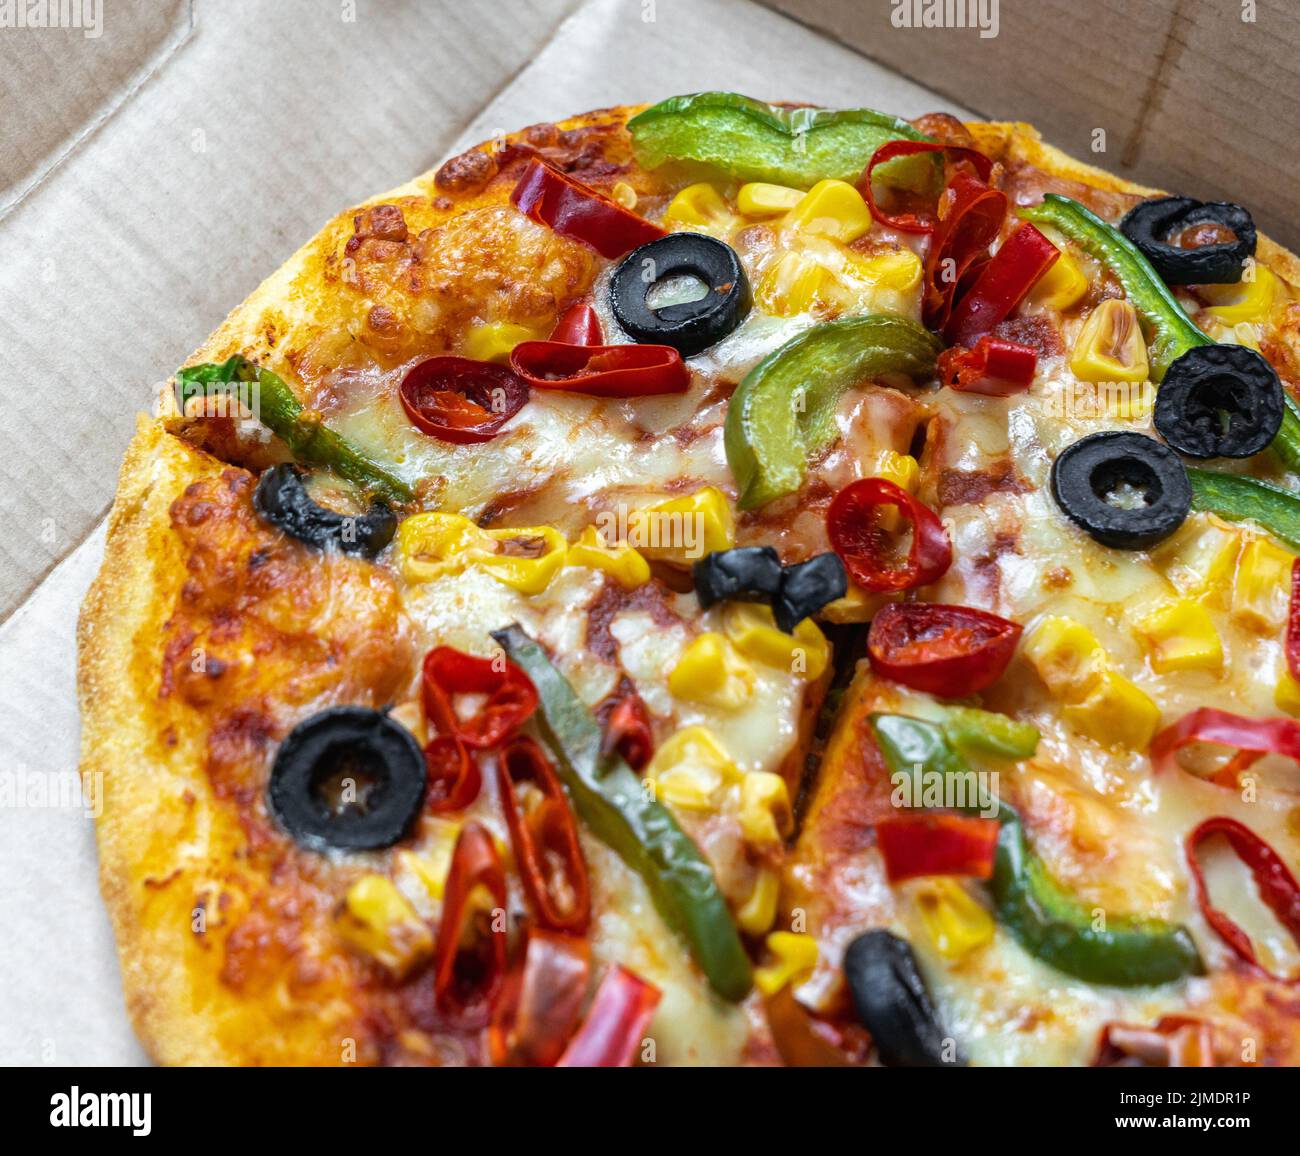 Pizza végétarienne garnie d'olives noires, de poivrons verts, de paprika rouge et de maïs doré dans une boîte à emporter. Banque D'Images